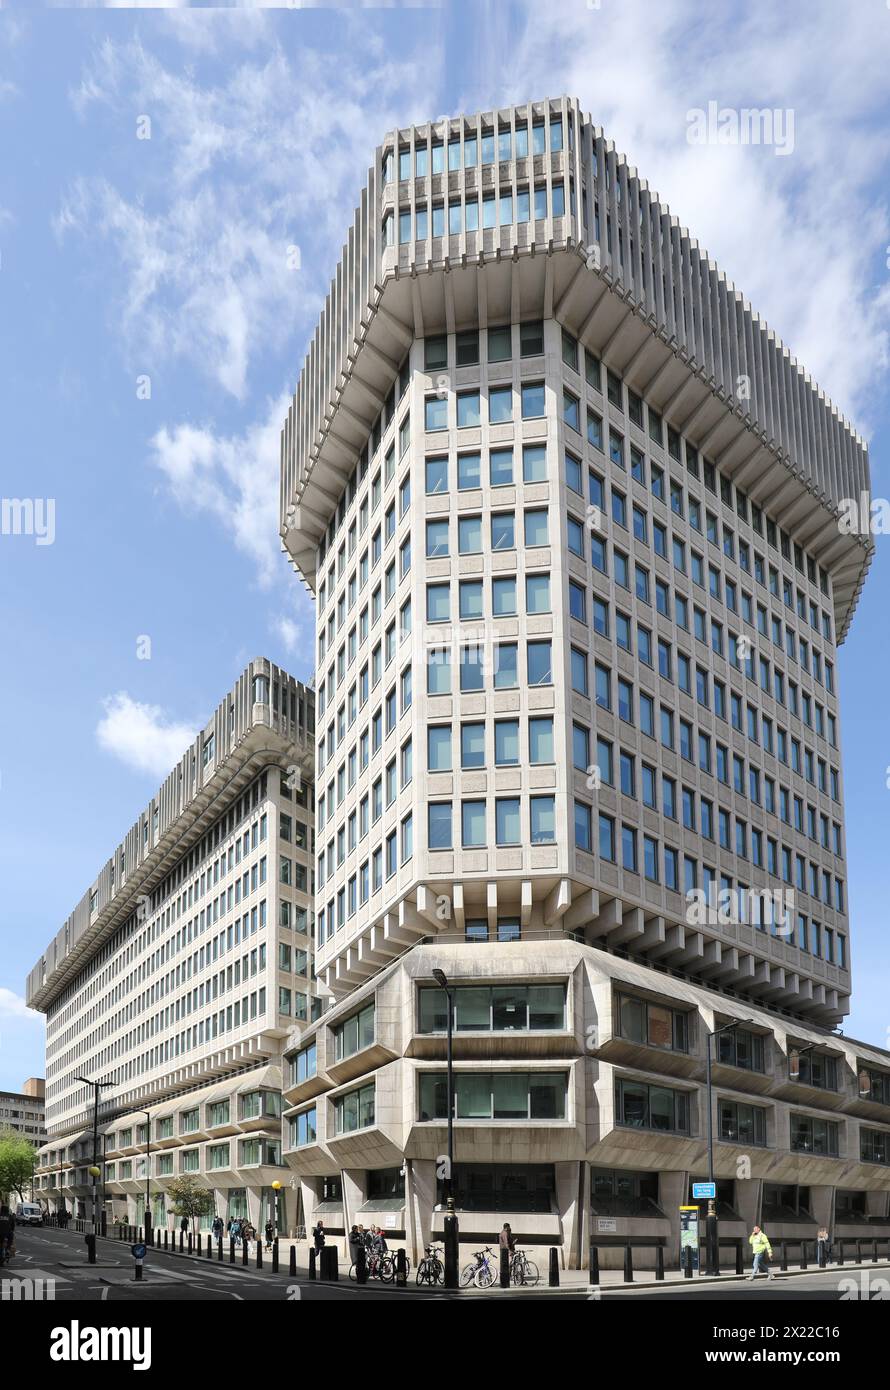 Gebäude des britischen Justizministeriums in 102 Petty France, London. Das brutalistische 14-stöckige Betongebäude, entworfen von Fitzroy Robinson Architects. Stockfoto